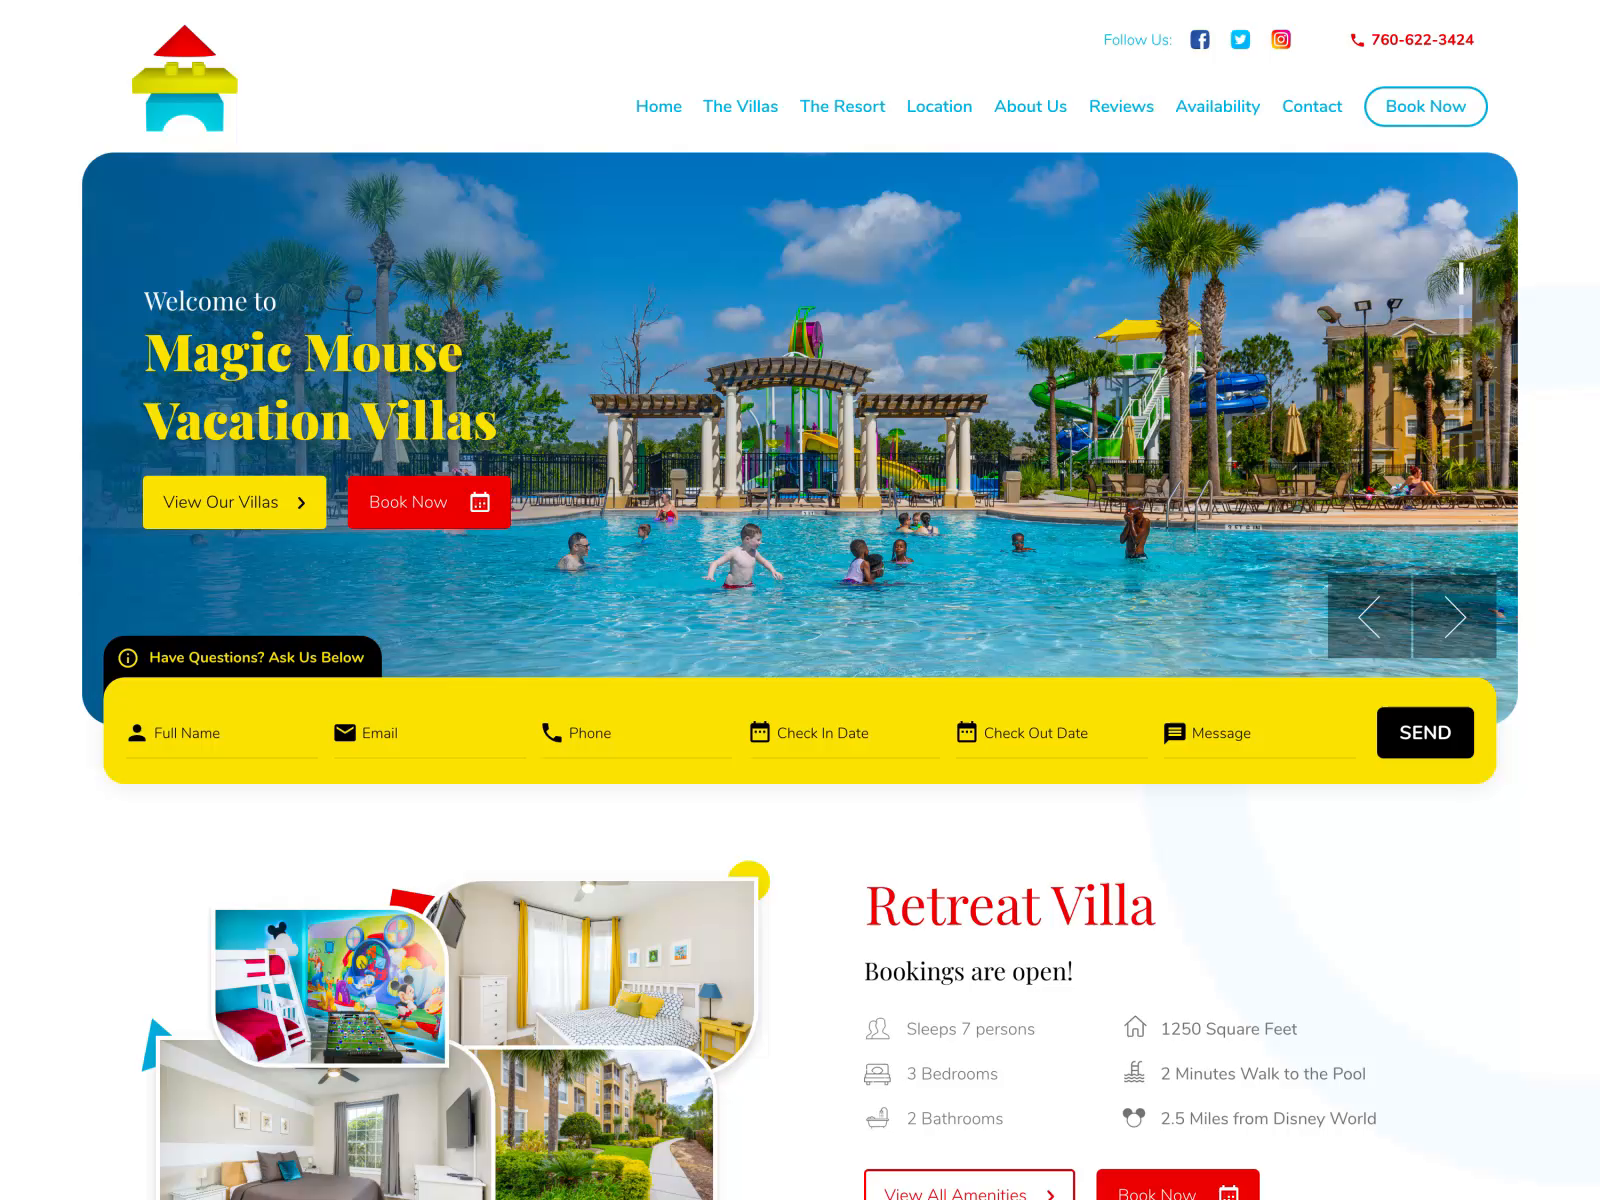 Vacation Villa & Resort Website Design colorful design illustration resort typography vacation rental villa webdesign website